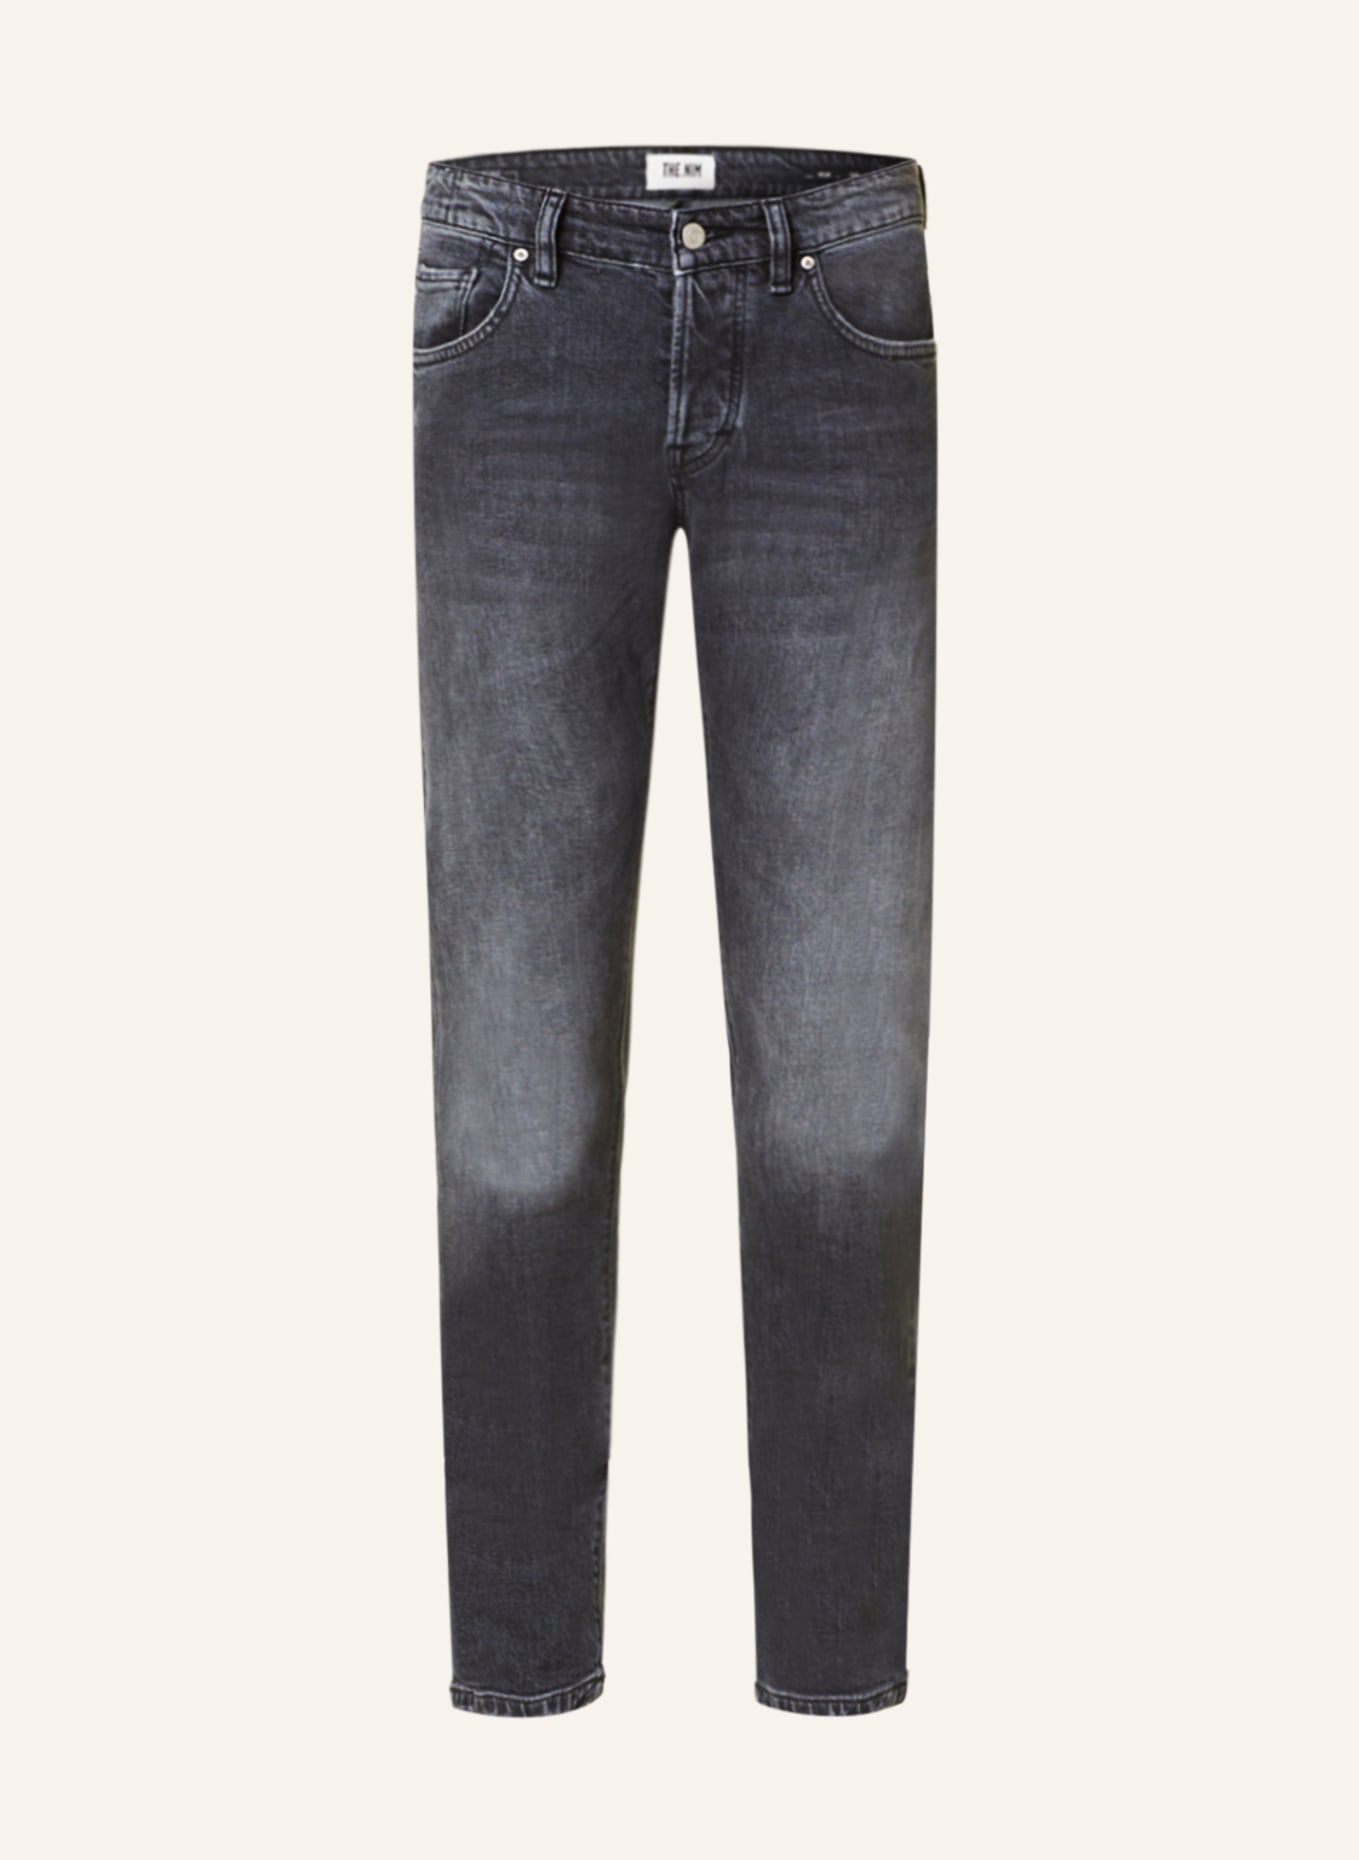 THE.NIM STANDARD Jeans DYLAN Slim Fit, Farbe: W755-BLK BLACK (Bild 1)